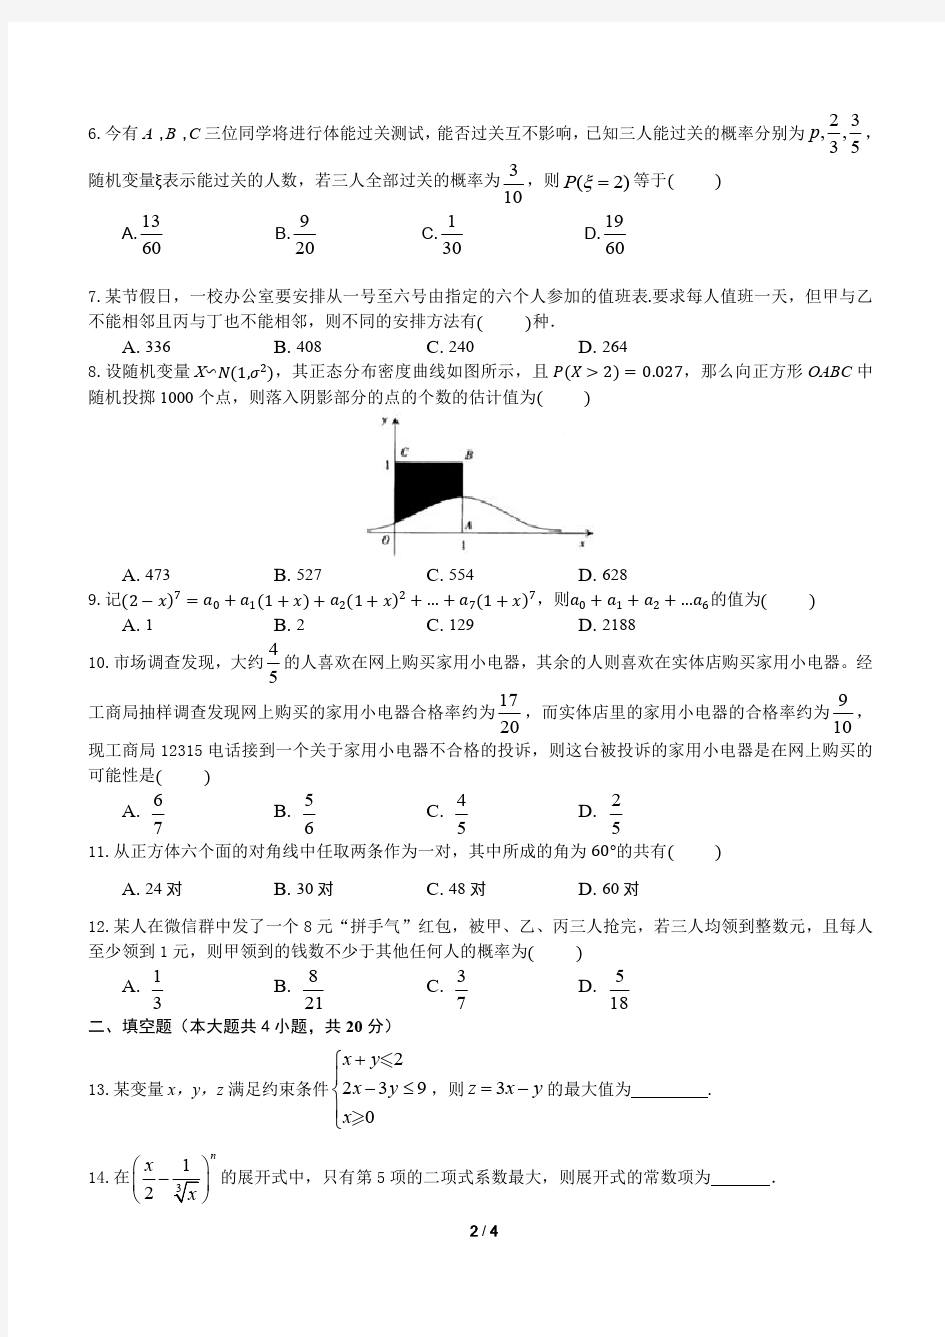 2020年重庆一中高2021级高二下期数学周考试卷(1)(1)